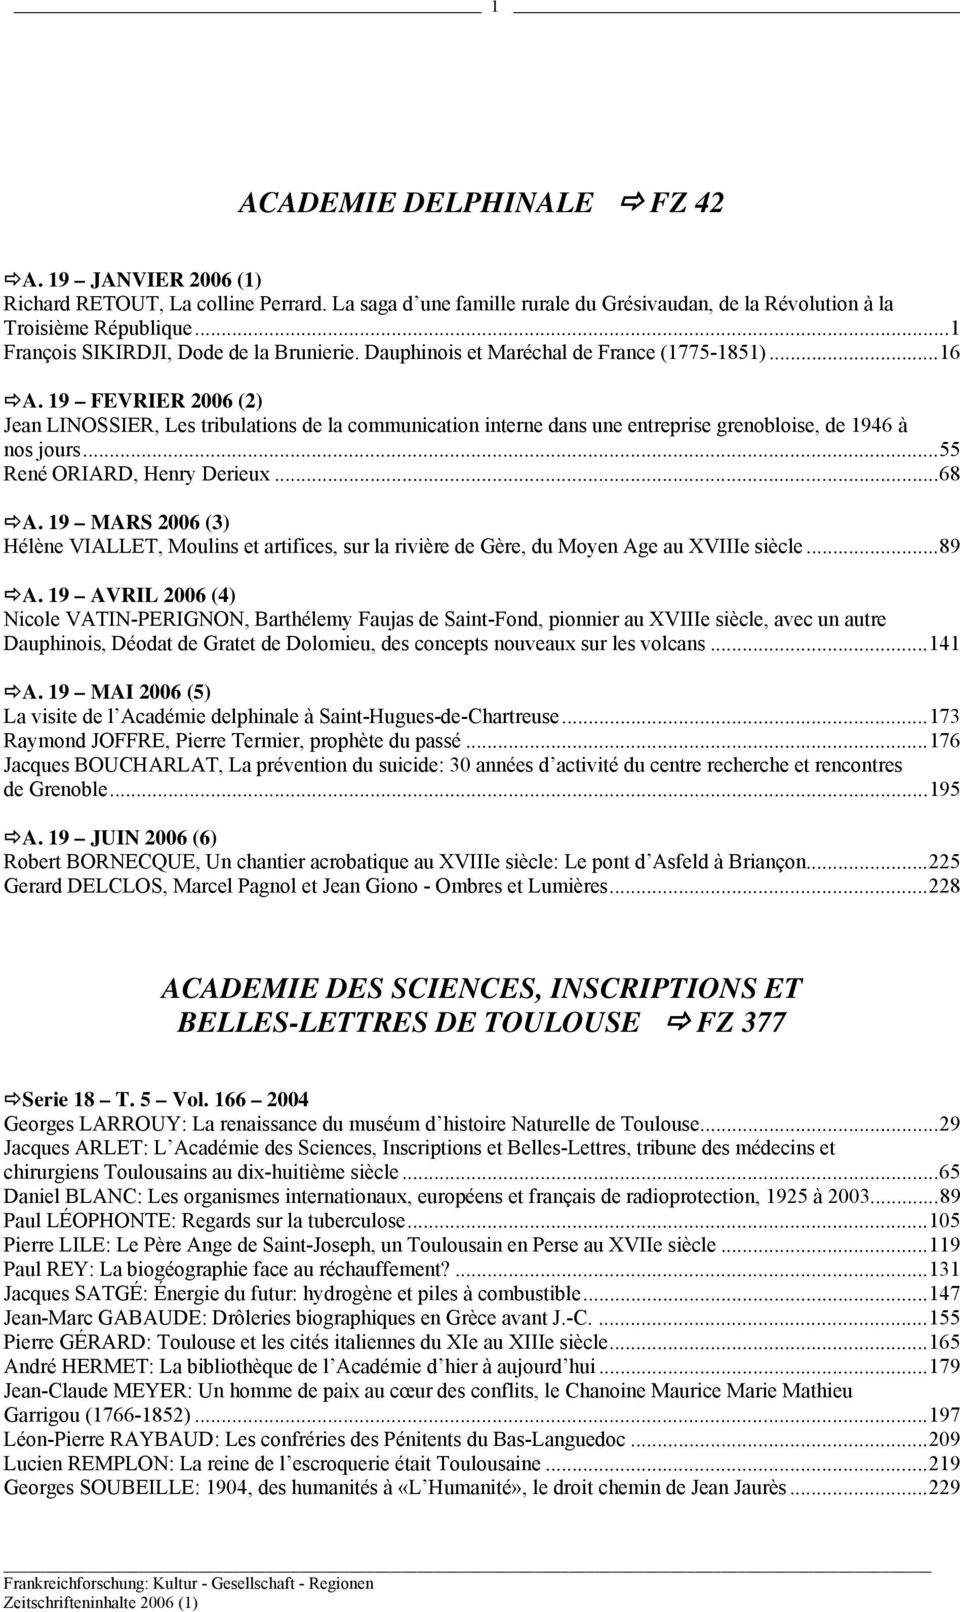 19 FEVRIER 2006 (2) Jean LINOSSIER, Les tribulations de la communication interne dans une entreprise grenobloise, de 1946 à nos jours...55 René ORIARD, Henry Derieux...68 A.